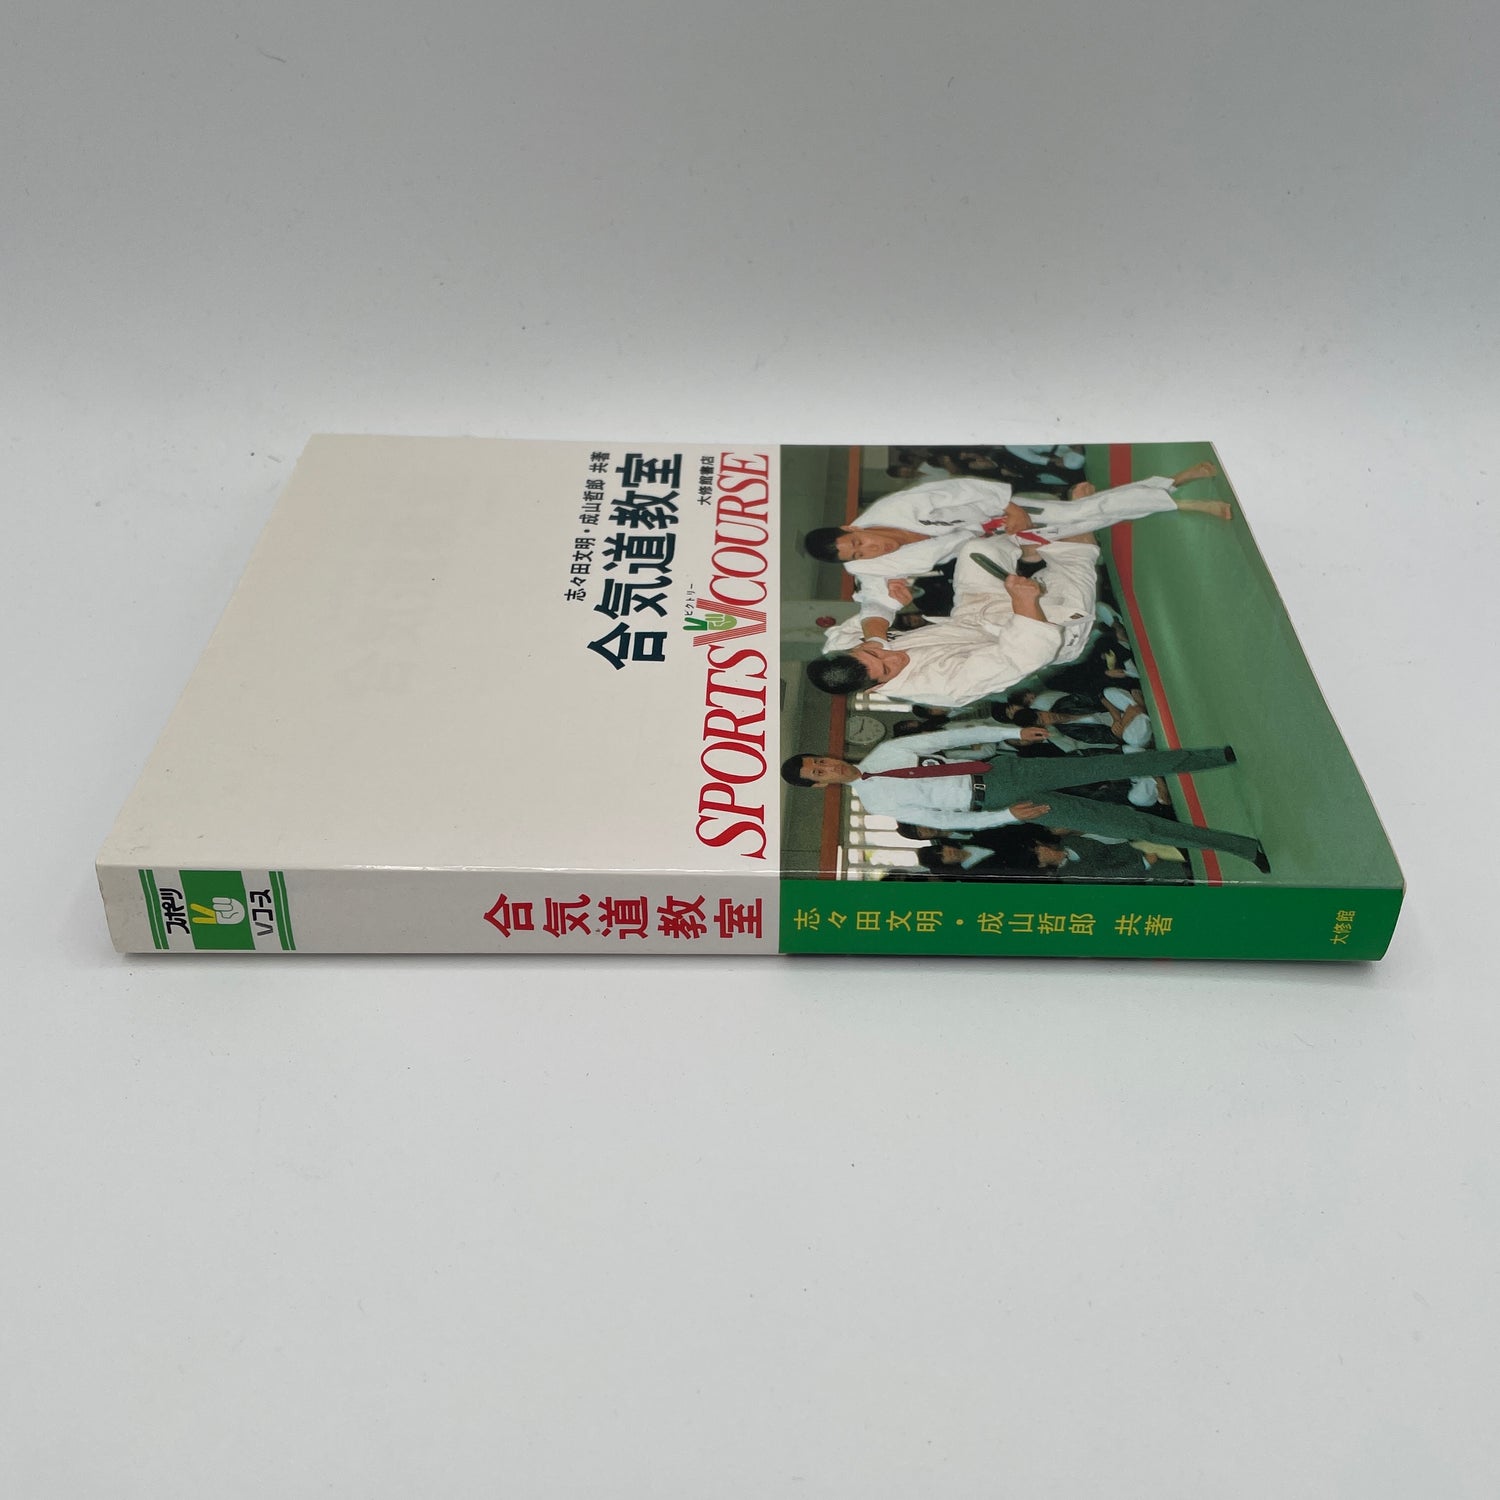 Tomiki Aikido Classroom Book by Fumiaki Shishida & Tetsuro Nariyama (Preowned)